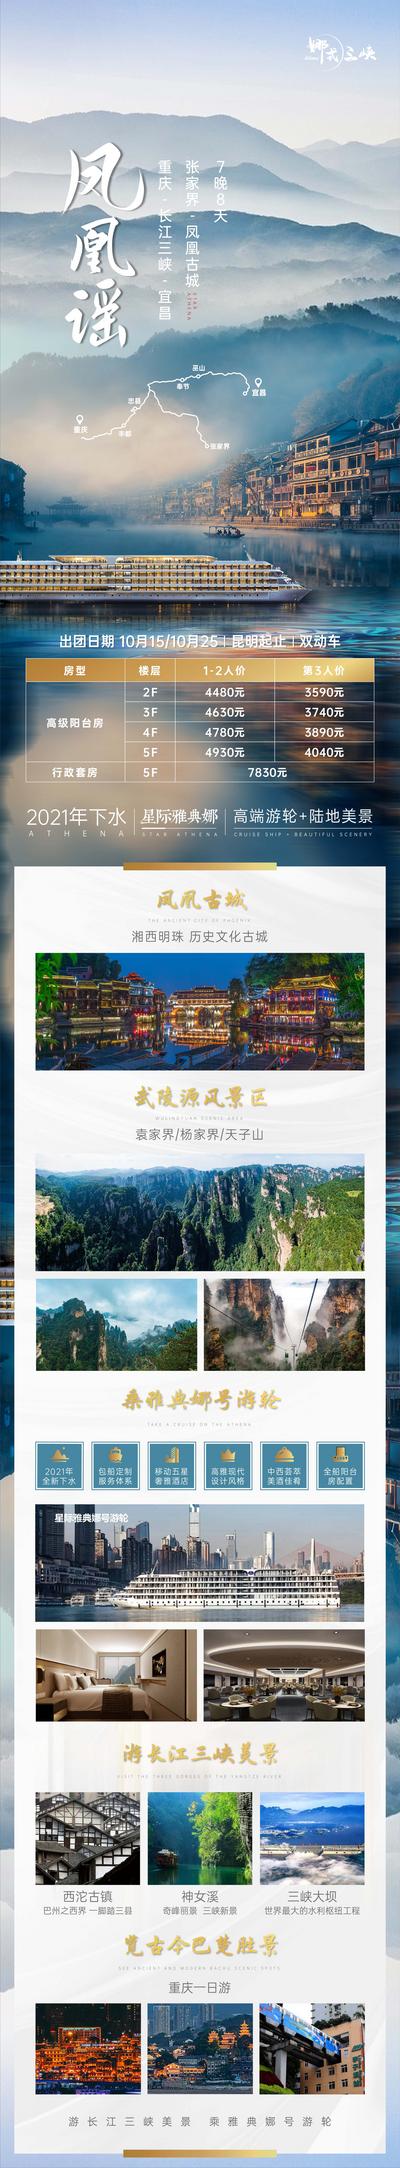 南门网 重庆长江三峡旅游海报